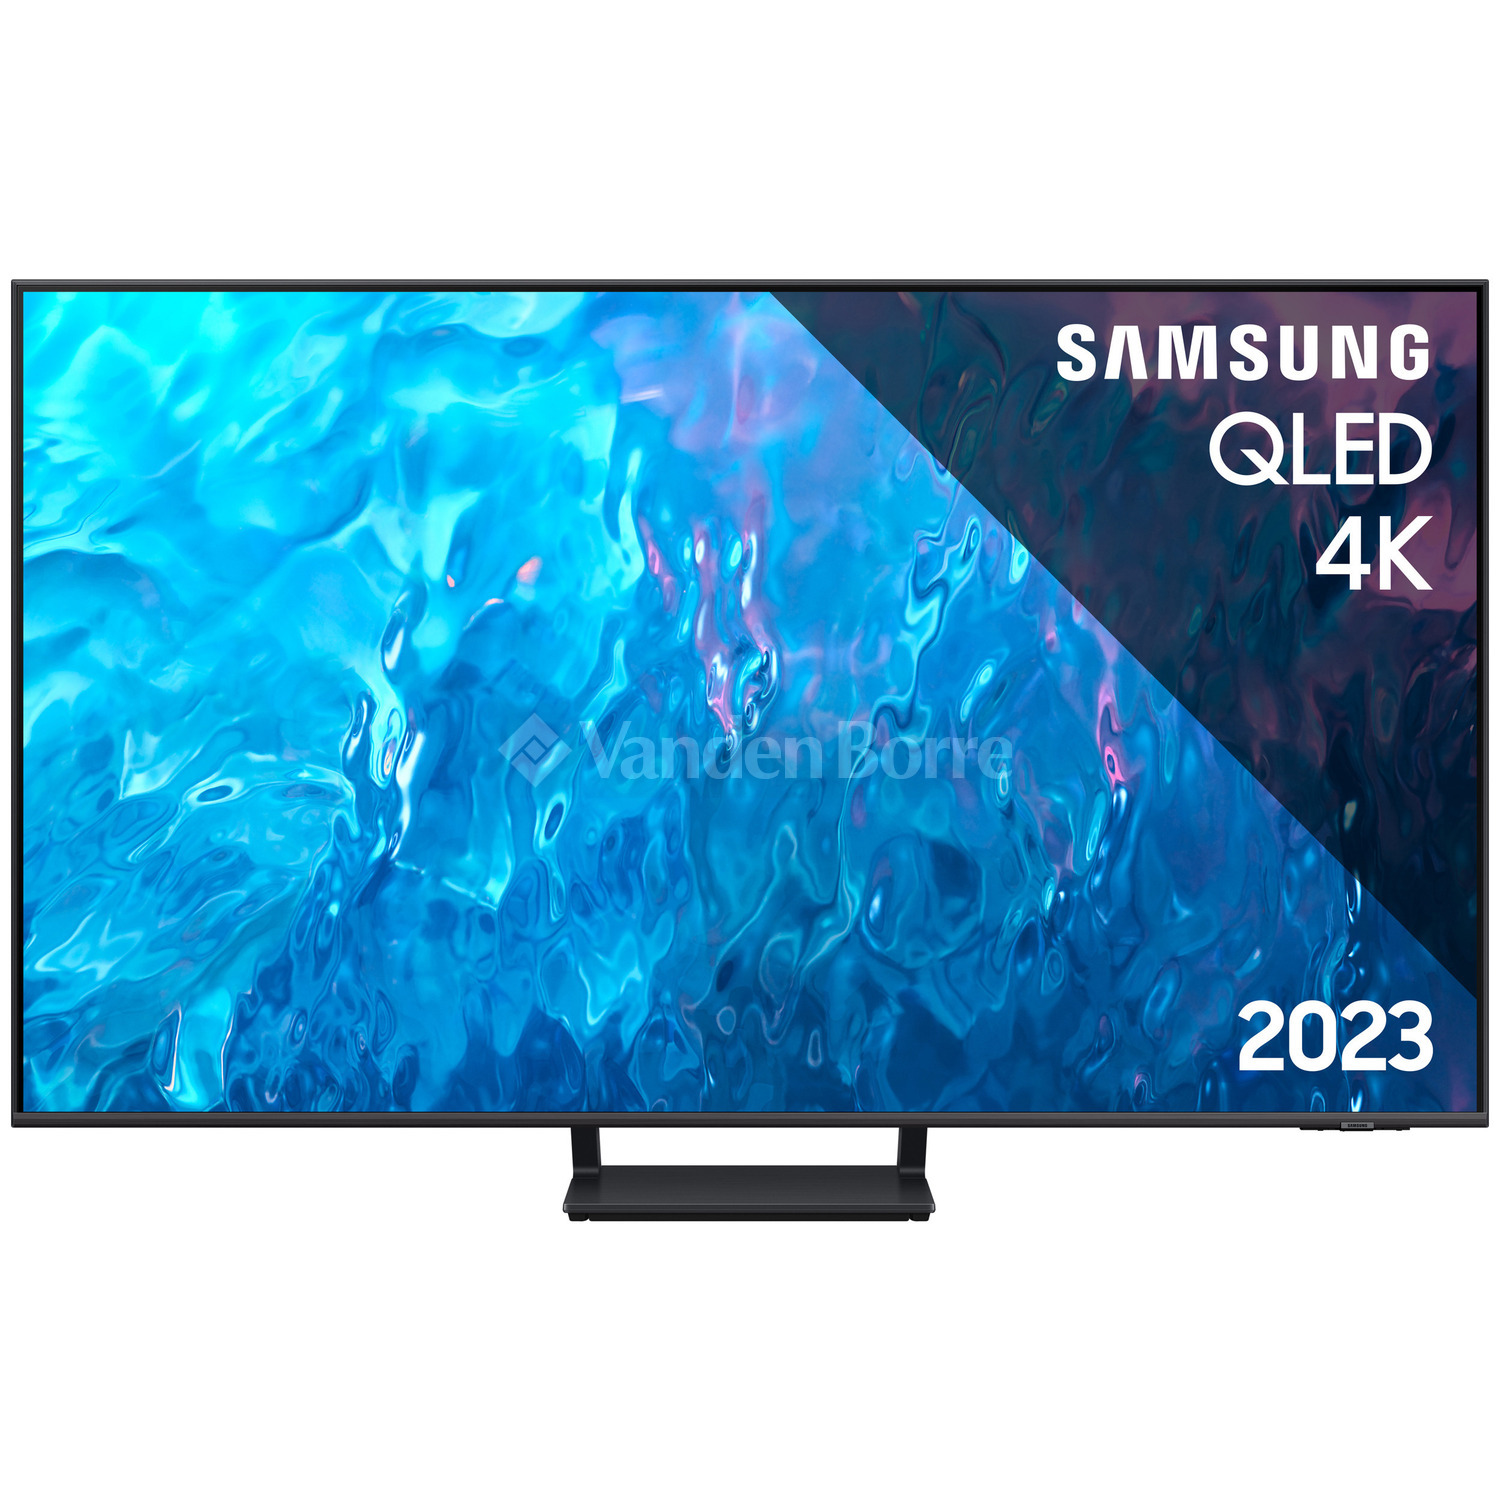 TV SAMSUNG QLED 4K 85 POUCES QE85Q70C (2023)